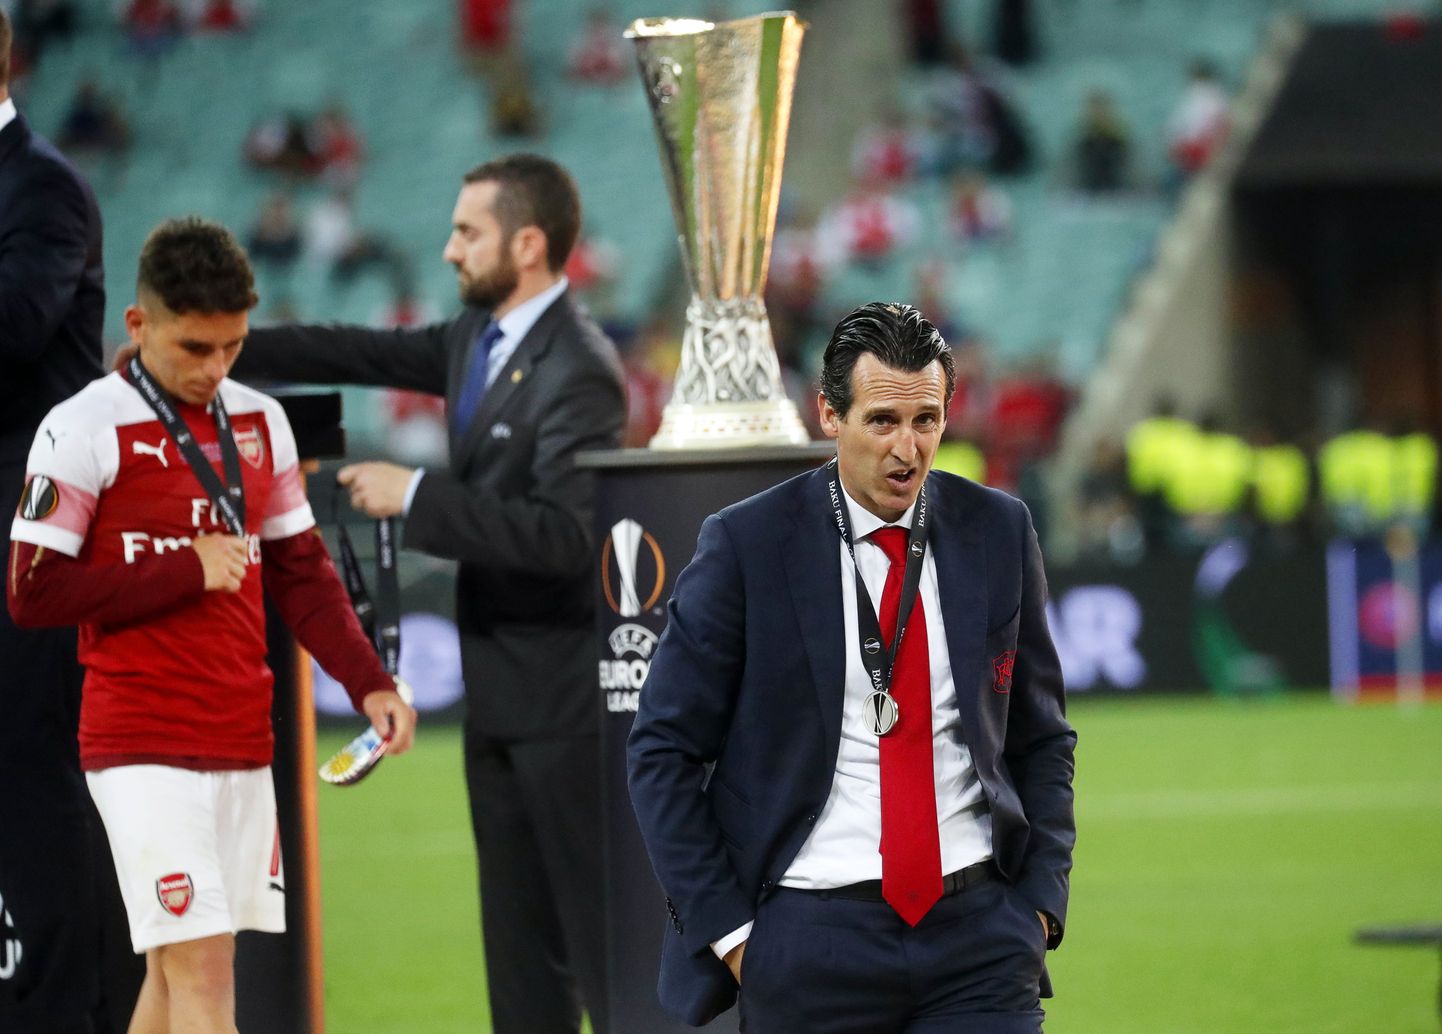 Arsenali peatreener Unai Emery pärast kaotusega lõppenud Euroopa liiga finaali.